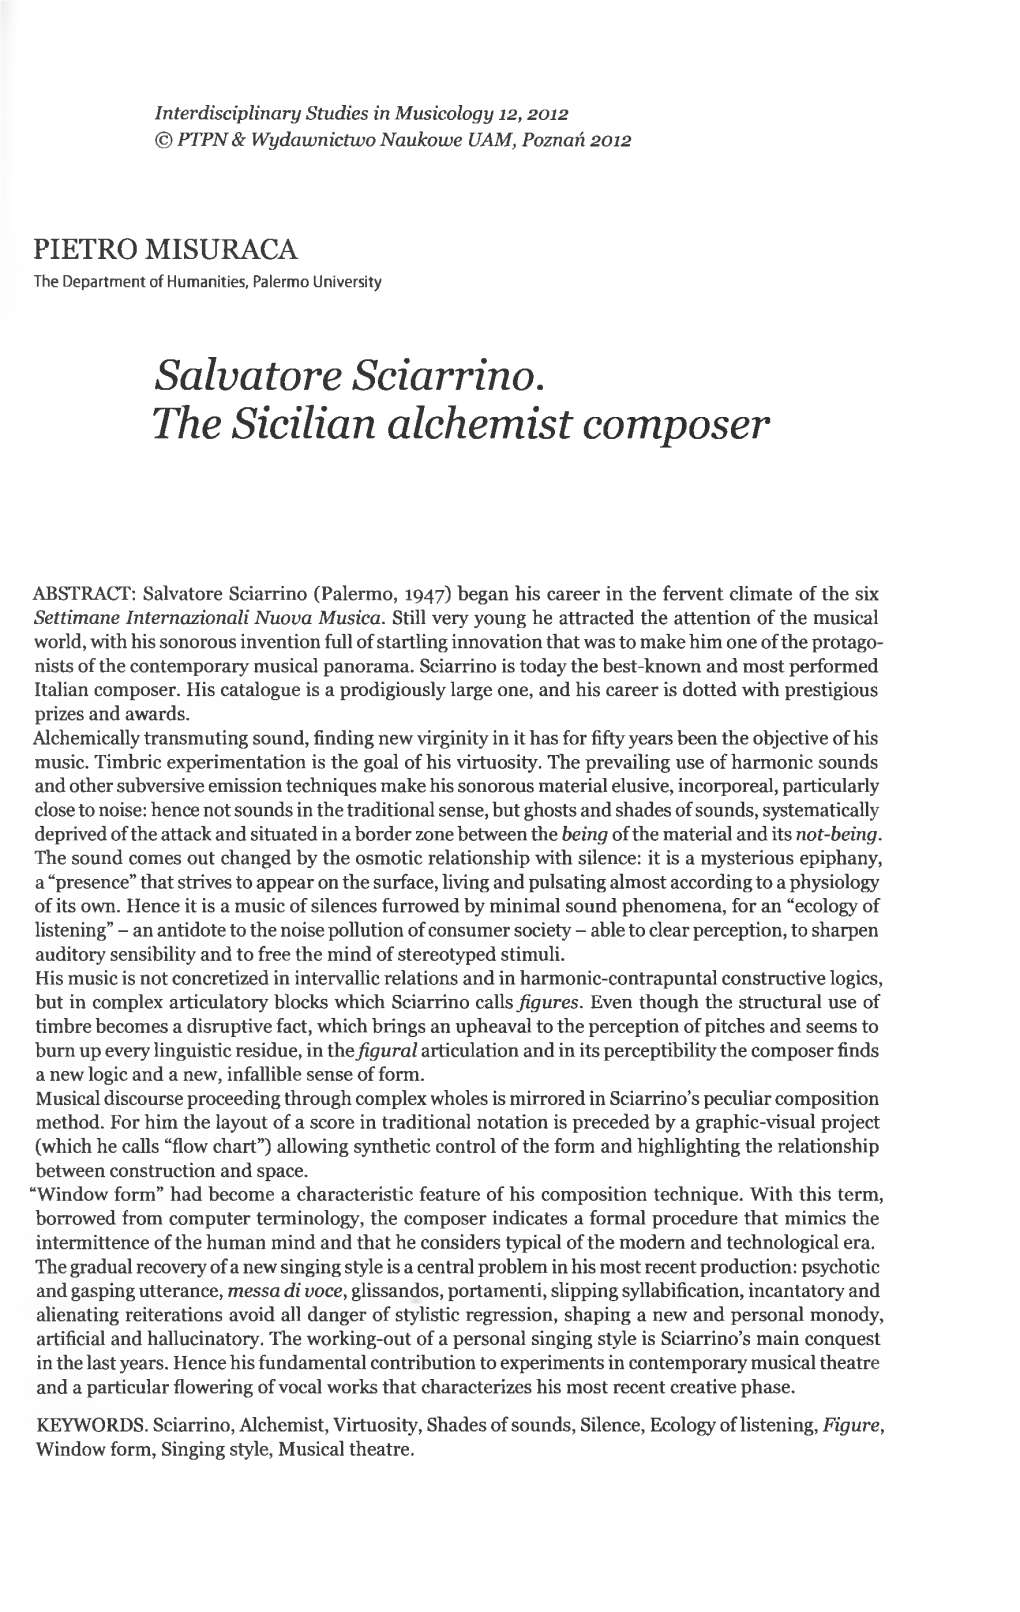 Salvatore Sciarrino. the Sicilian Alchemist Composer